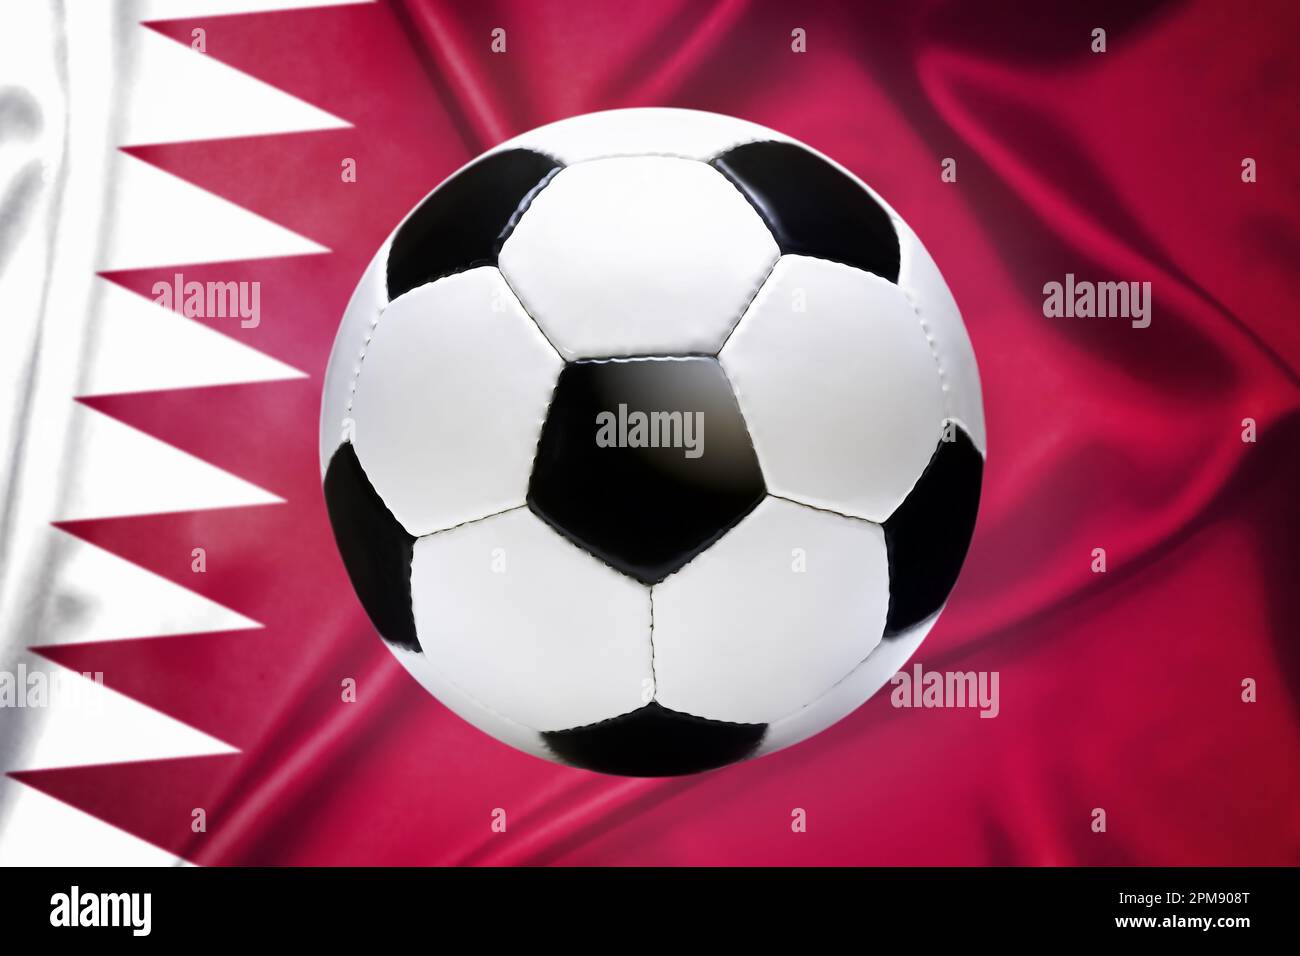 FOTOMONTAGE, Schwarz-weißer Fußball vor Fahne von Katar, Symbolfoto Fußballweltmeisterschaft Stock Photo